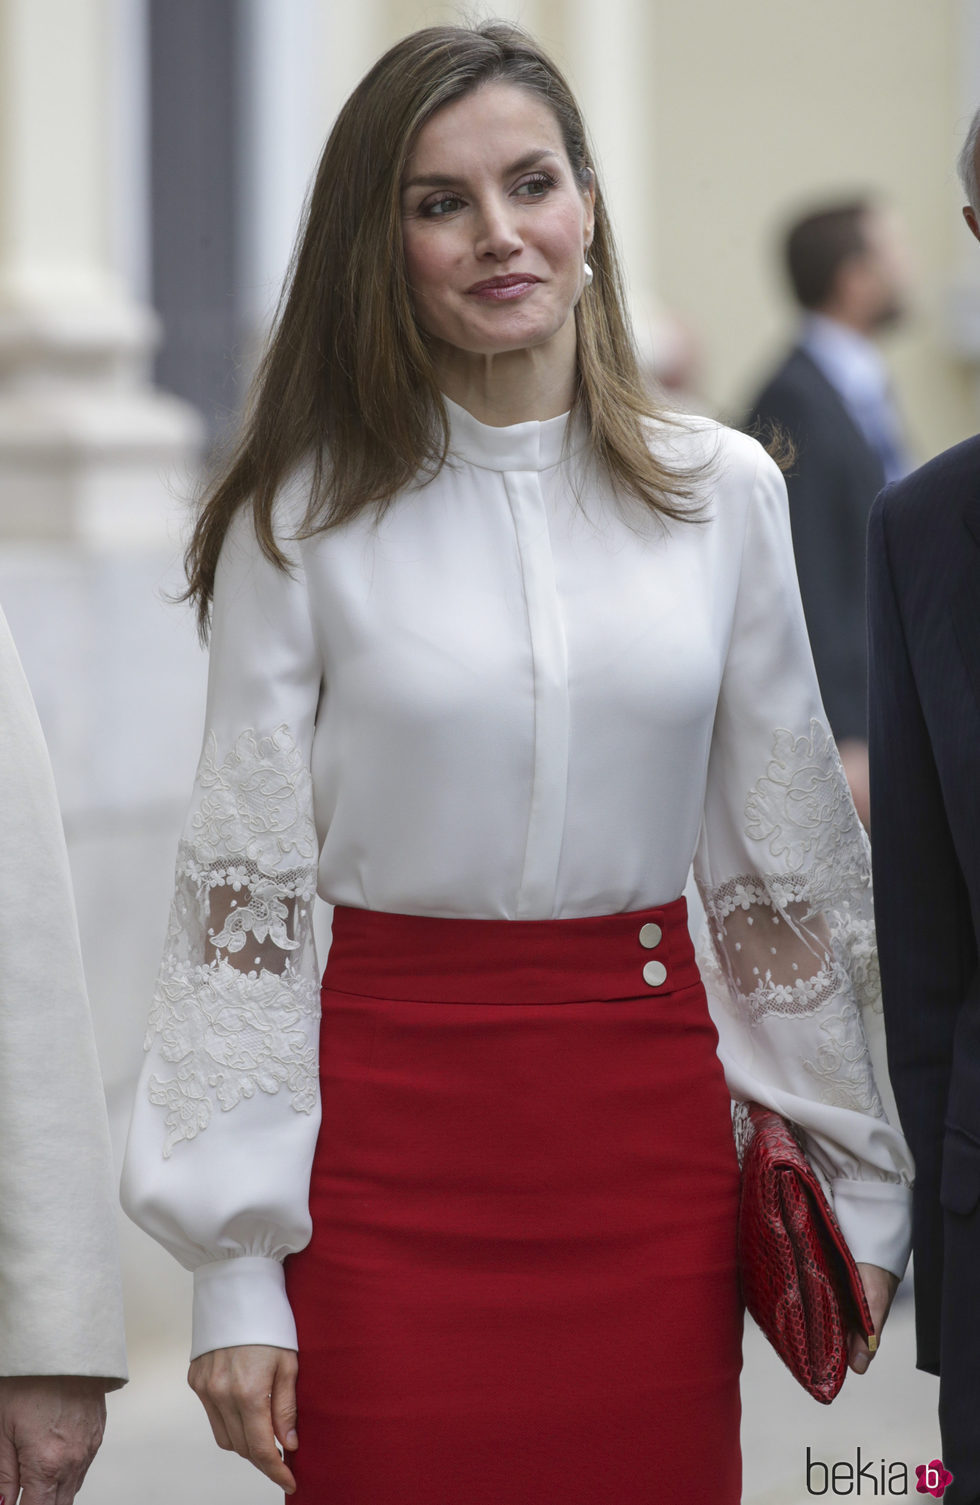 La Reina Letizia enmarca su mirada bajo unas cejas arqueadas